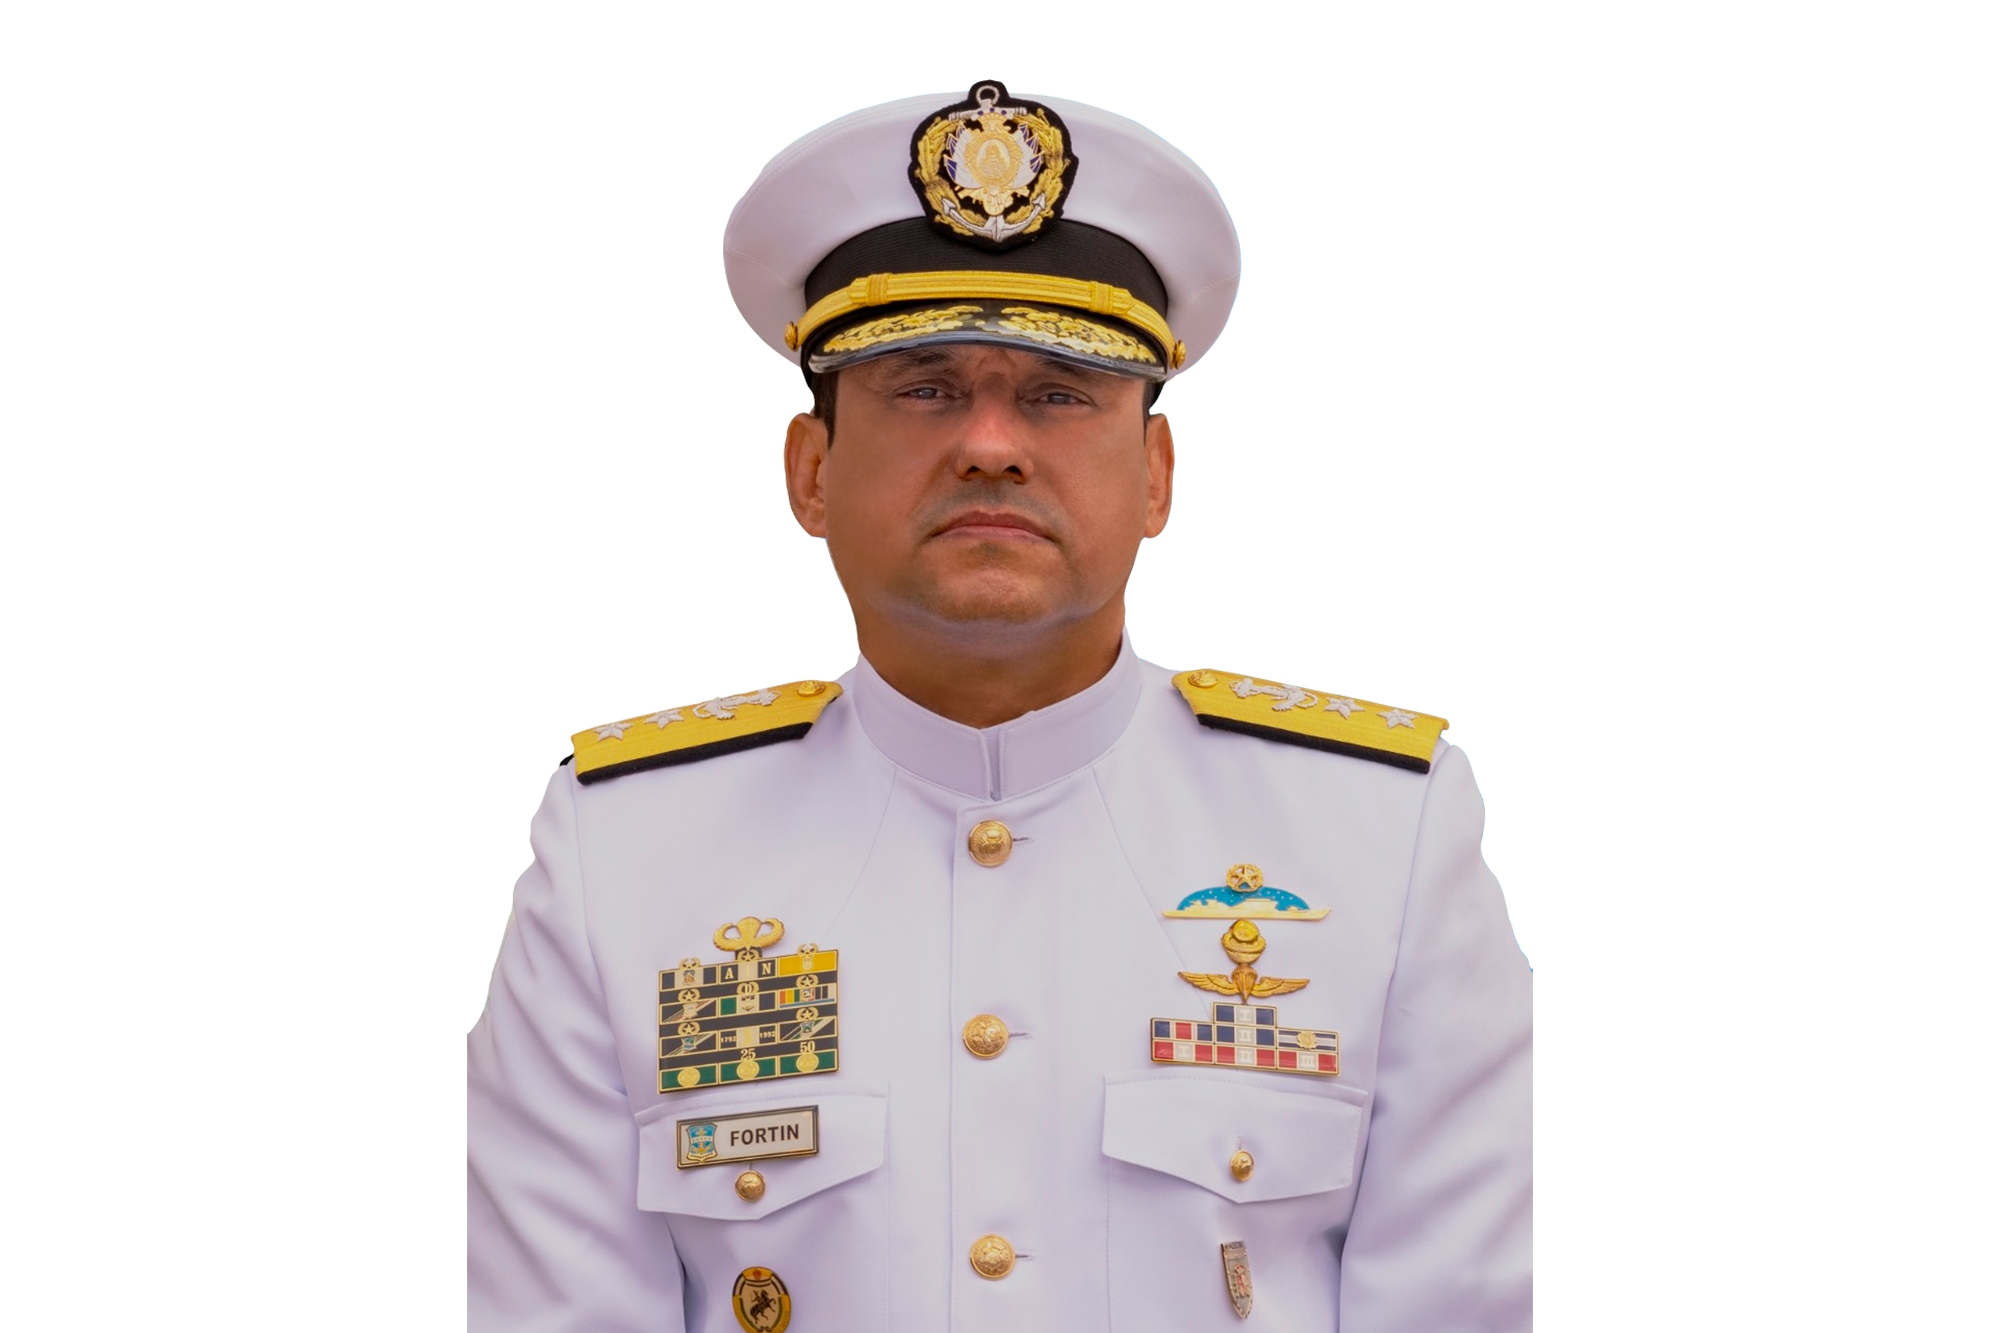 El comandante José Fortín Aguilar fué nombrado como el nuevo jefe del Estado Mayor Conjunto de las Fuerzas Armadas (FF.AA.). Foto: Fuerzas Armadas de Honduras. 2021